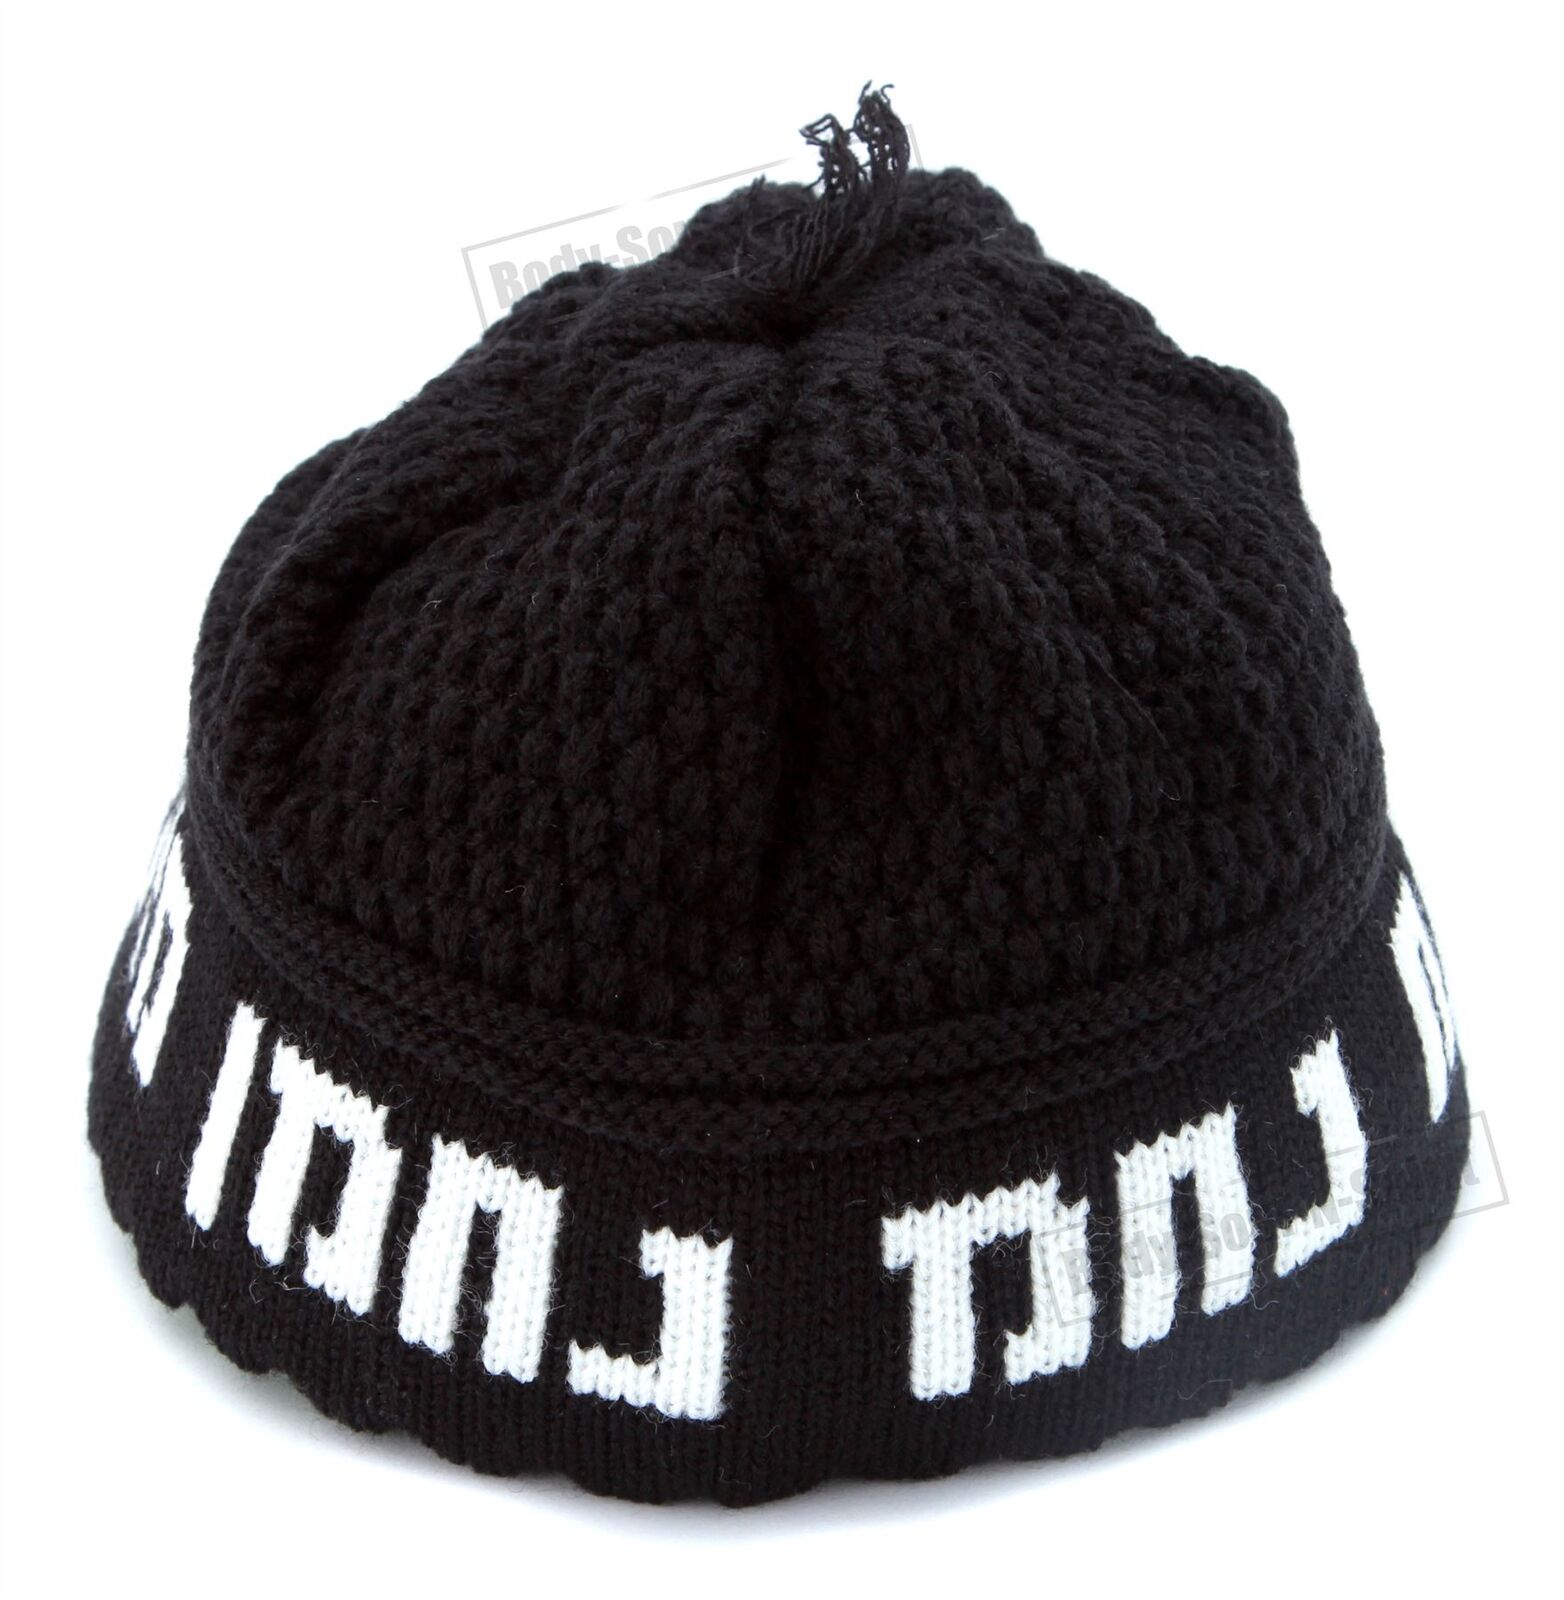 Rabbi Nachman Black Knitted Kippah Yarmulke Tribal Jewish Hat Nachcovering Cap